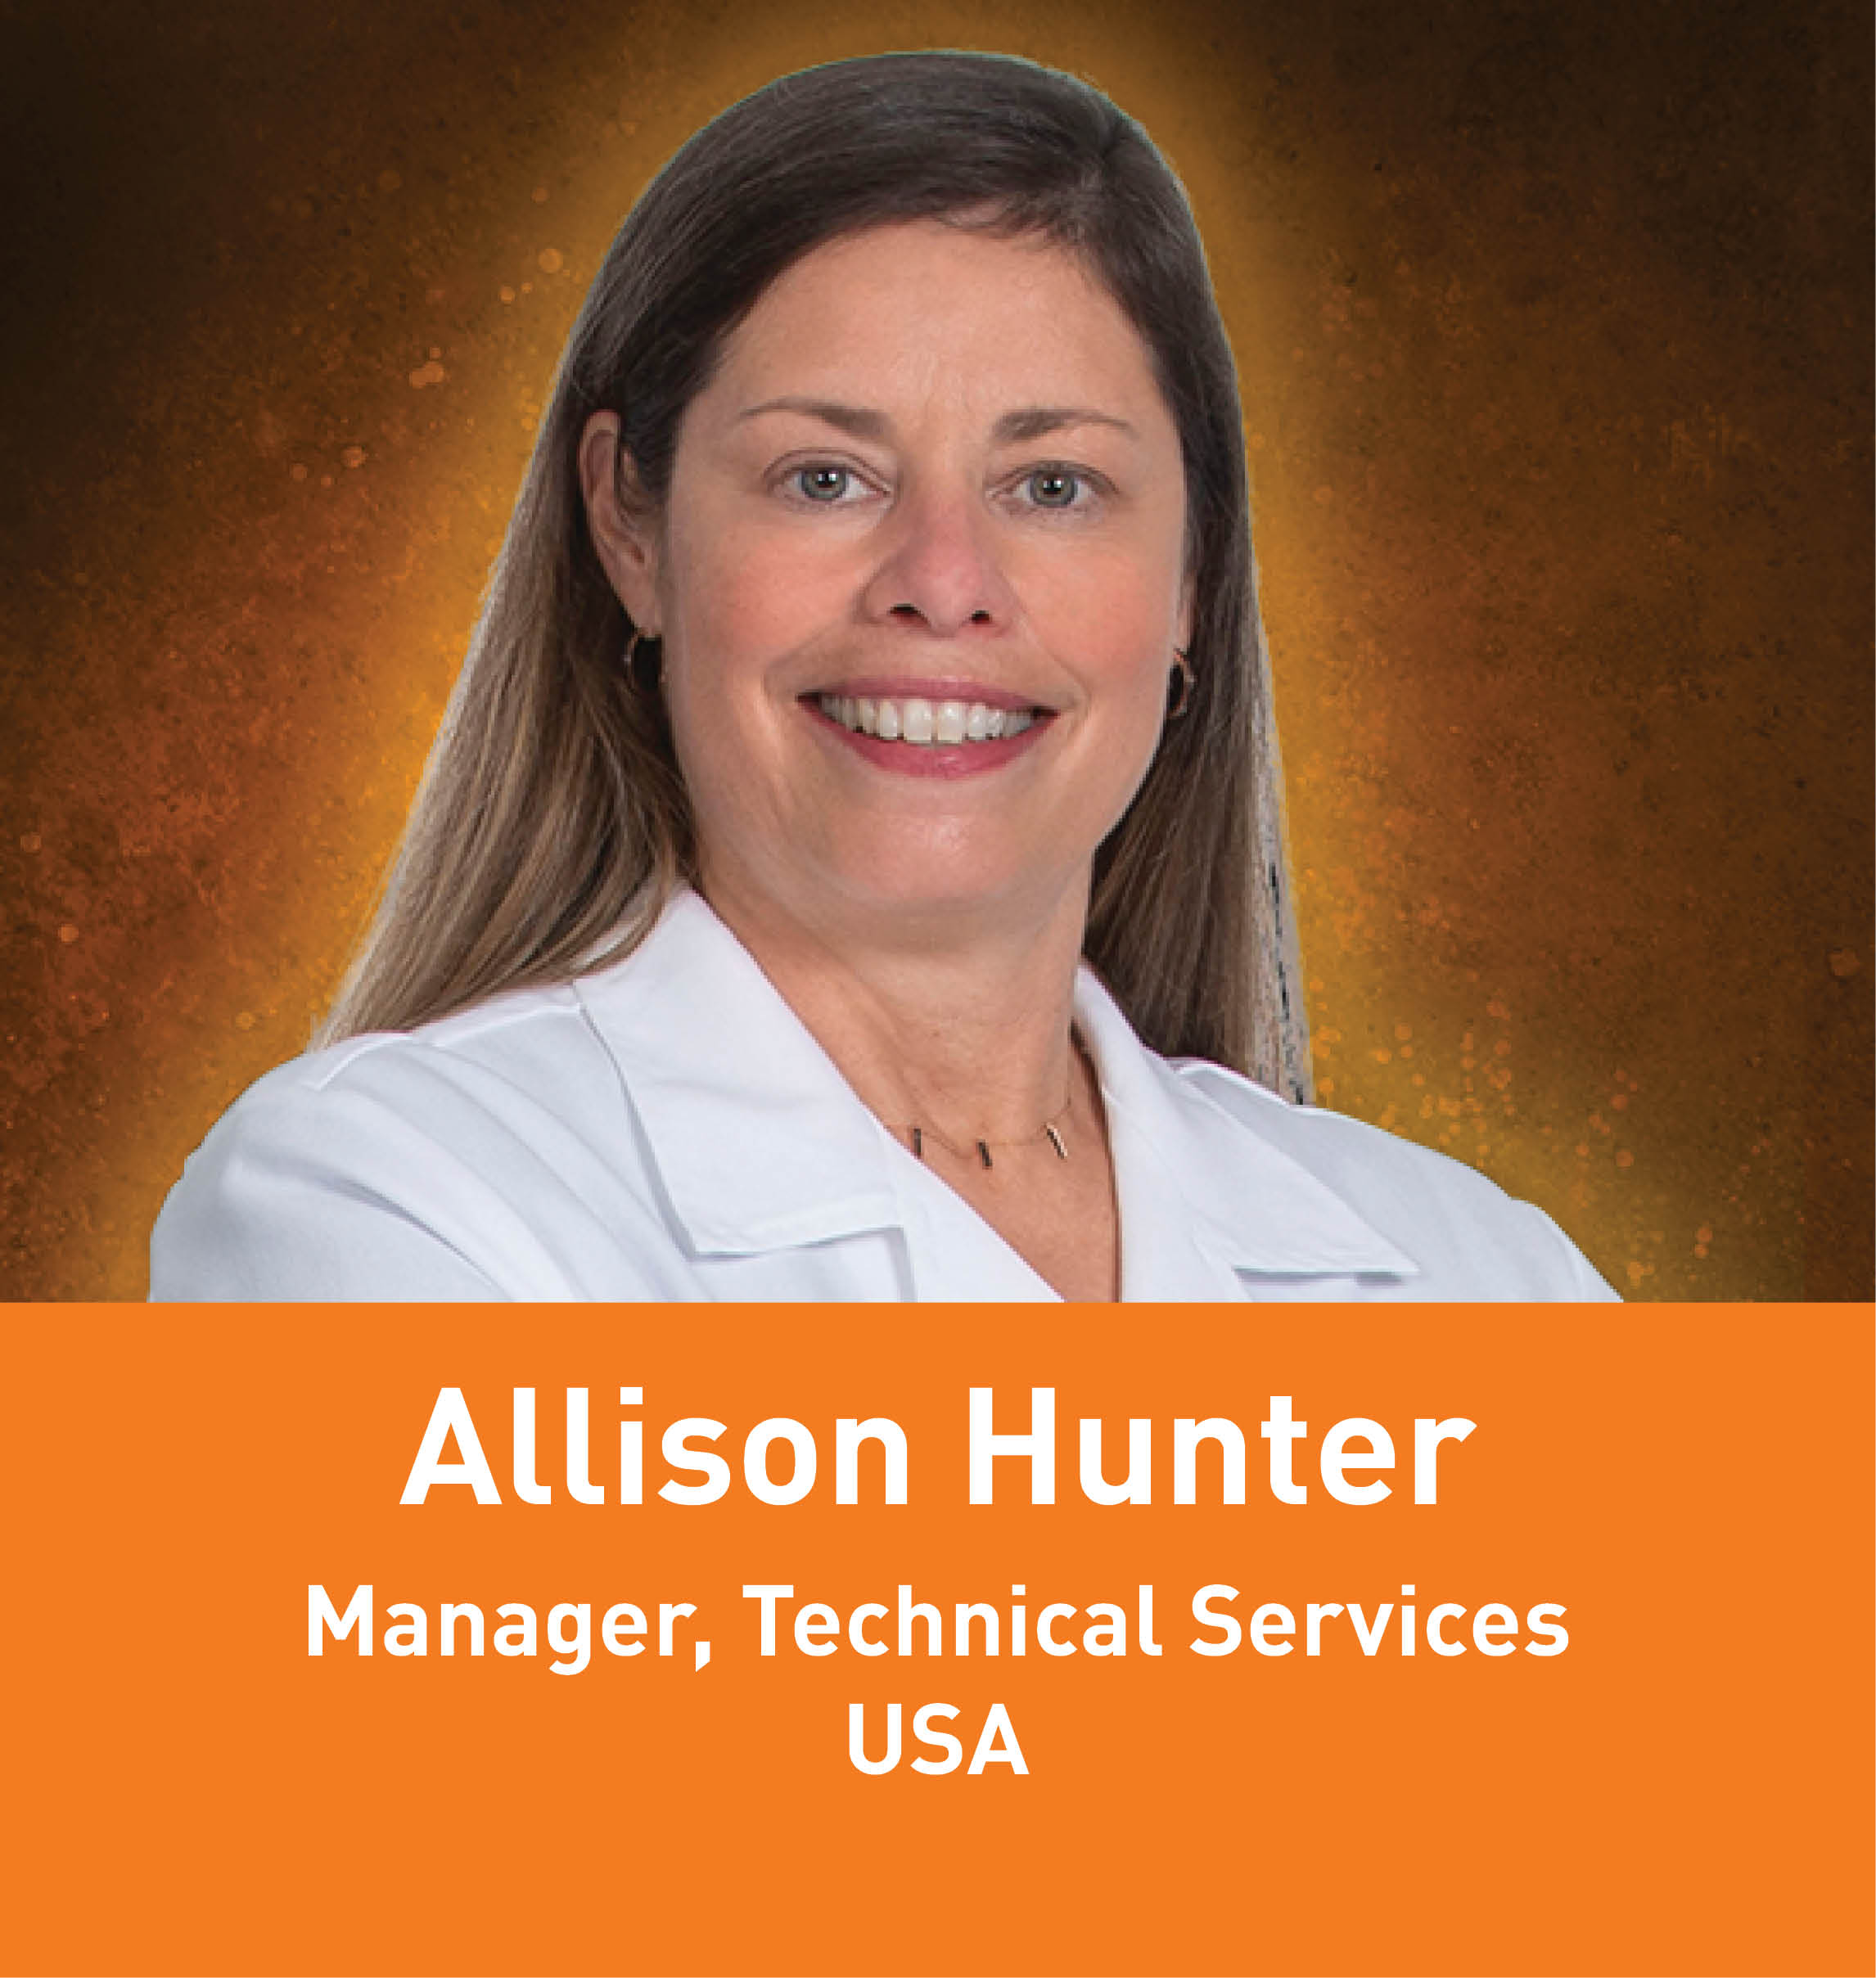 Allison Hunter